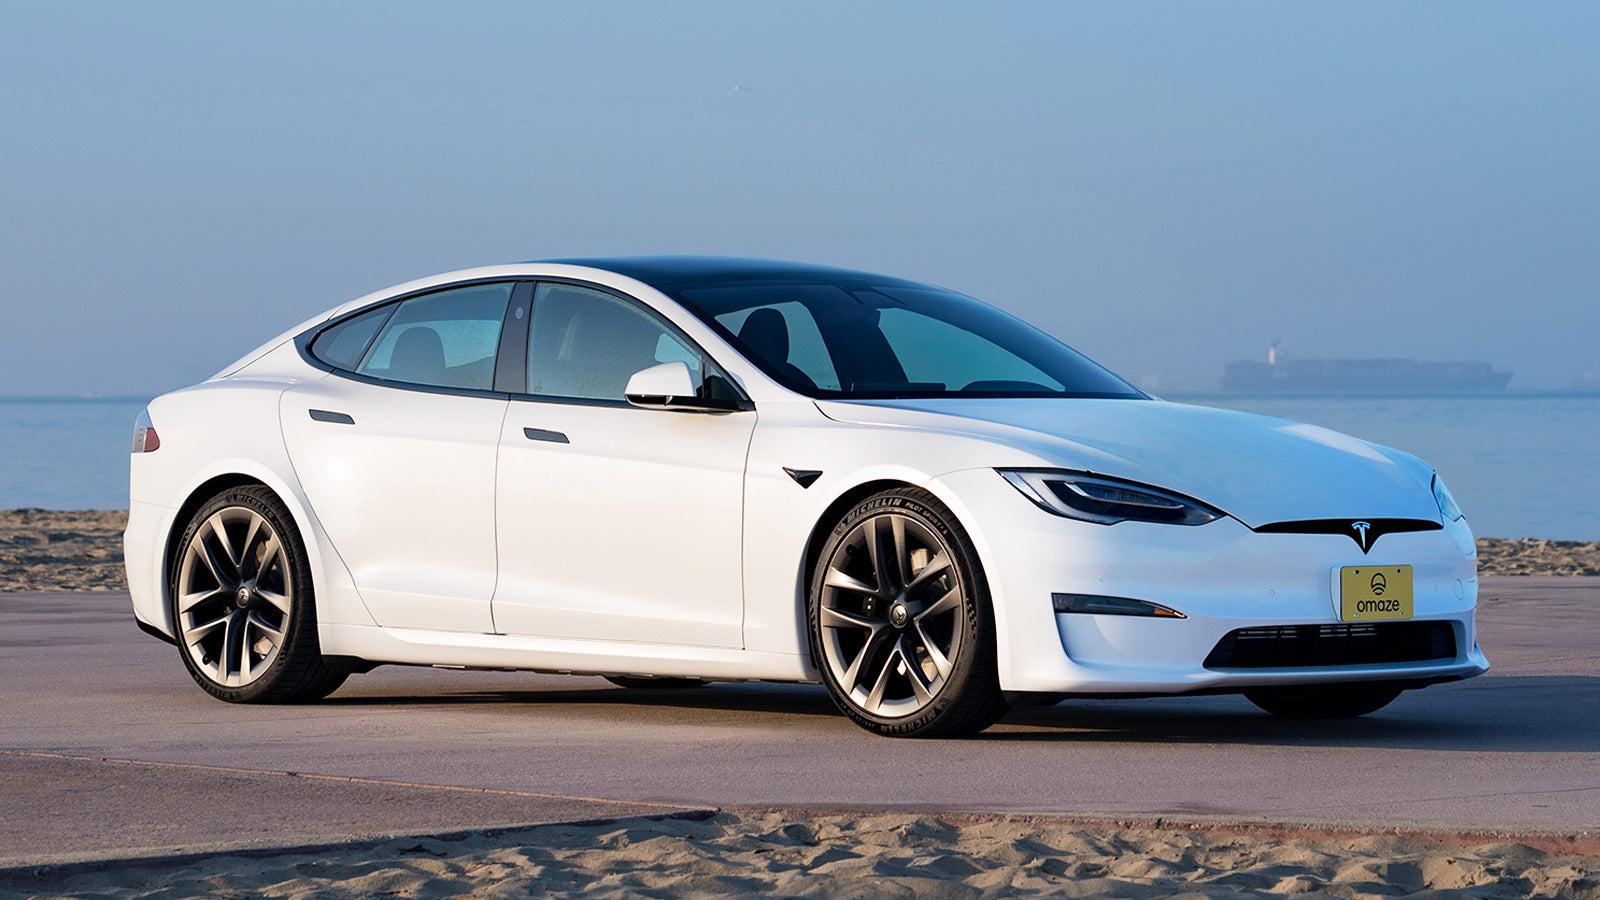 kwaadaardig nieuws embargo Win a Tesla Model S® Plaid